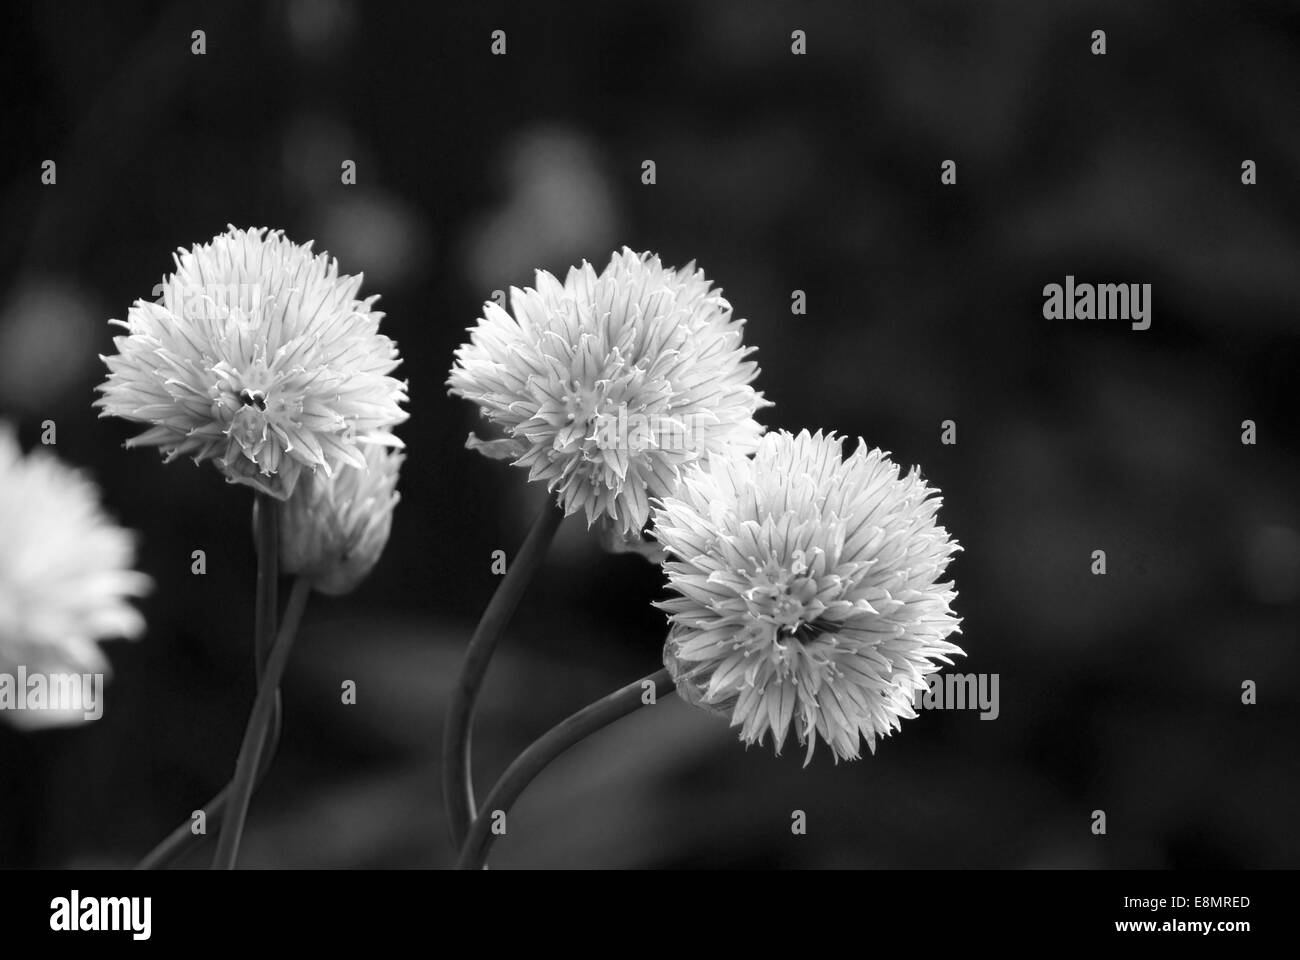 Nahaufnahme von drei zarte Blüten auf einer Pflanze Schnittlauch - monochrome Verarbeitung Stockfoto